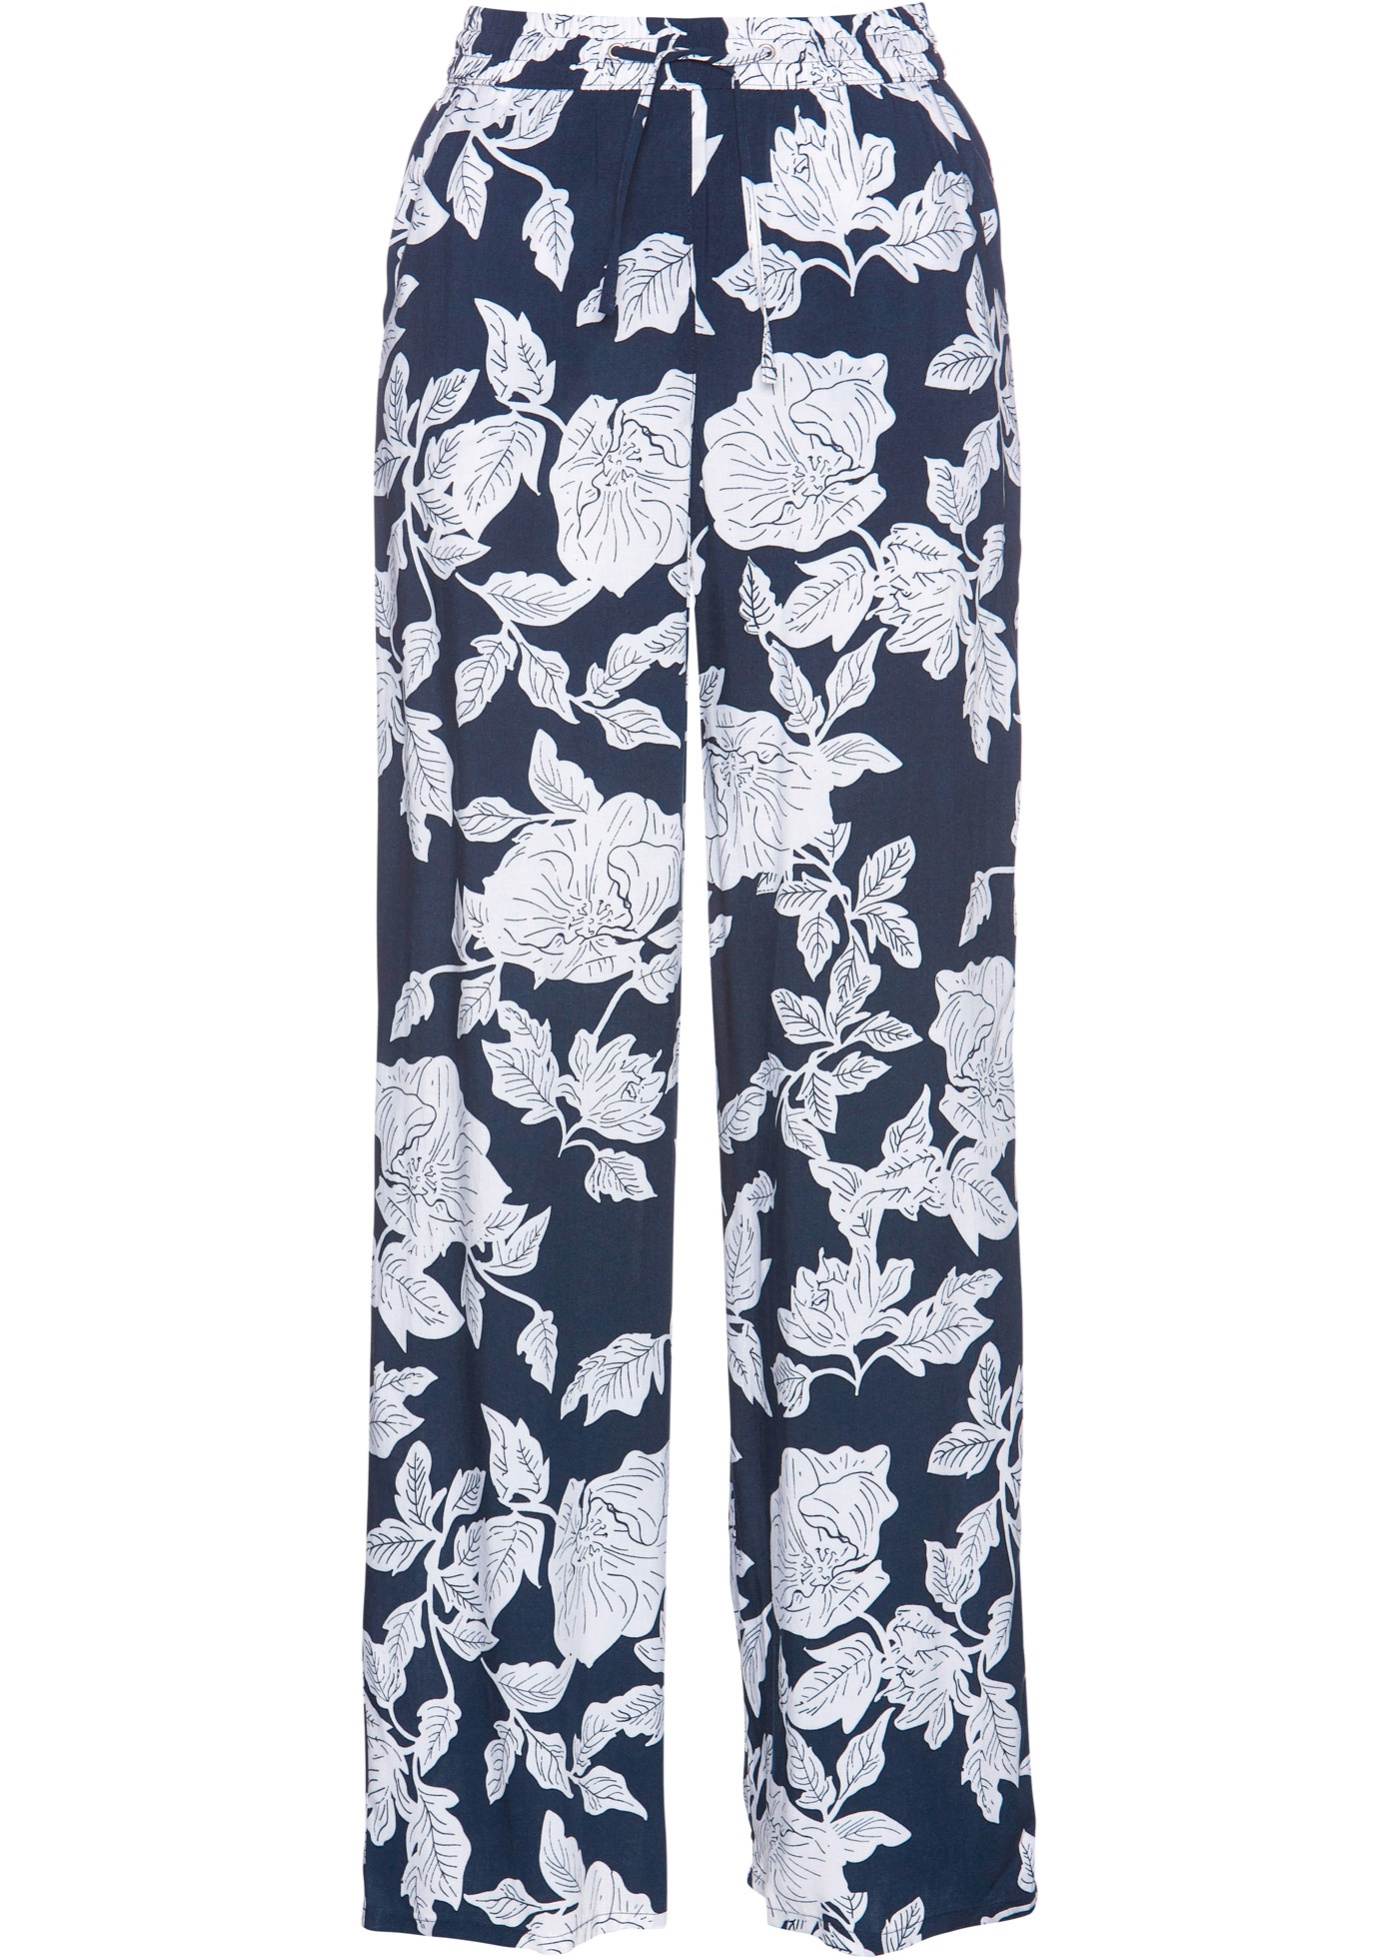 Stilvolle Hose mit Bindeband (94221995) in dunkelblau/weiß bedruckt